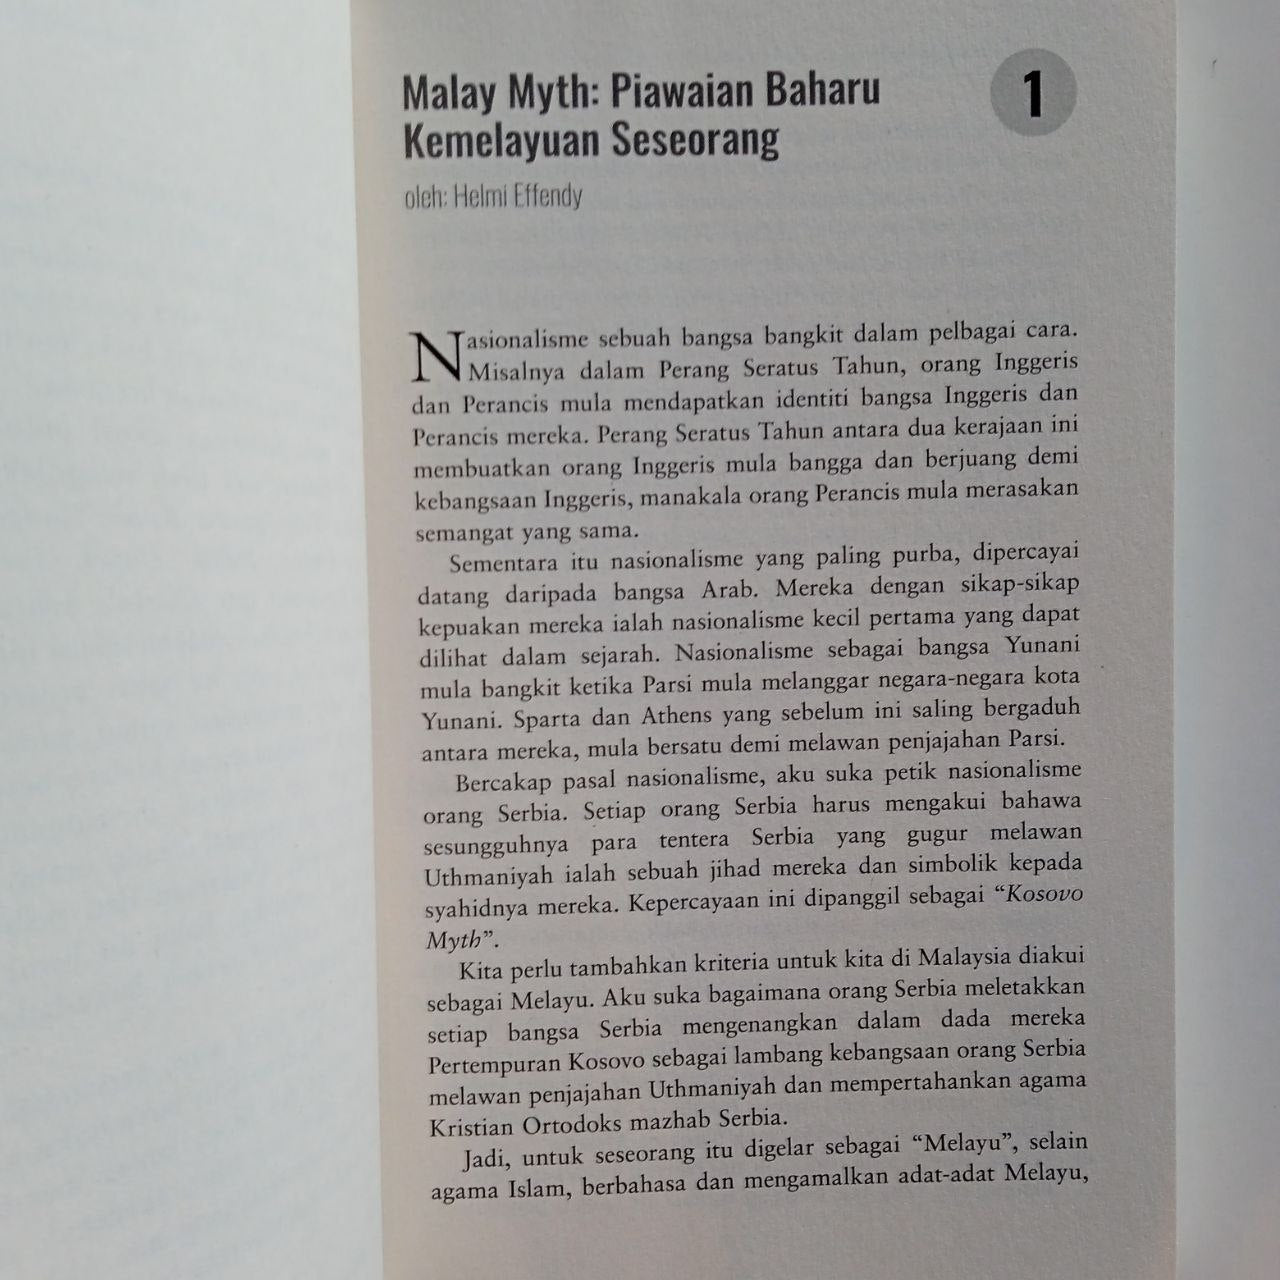 Jangan Selewengkan Sejarah Melayu II